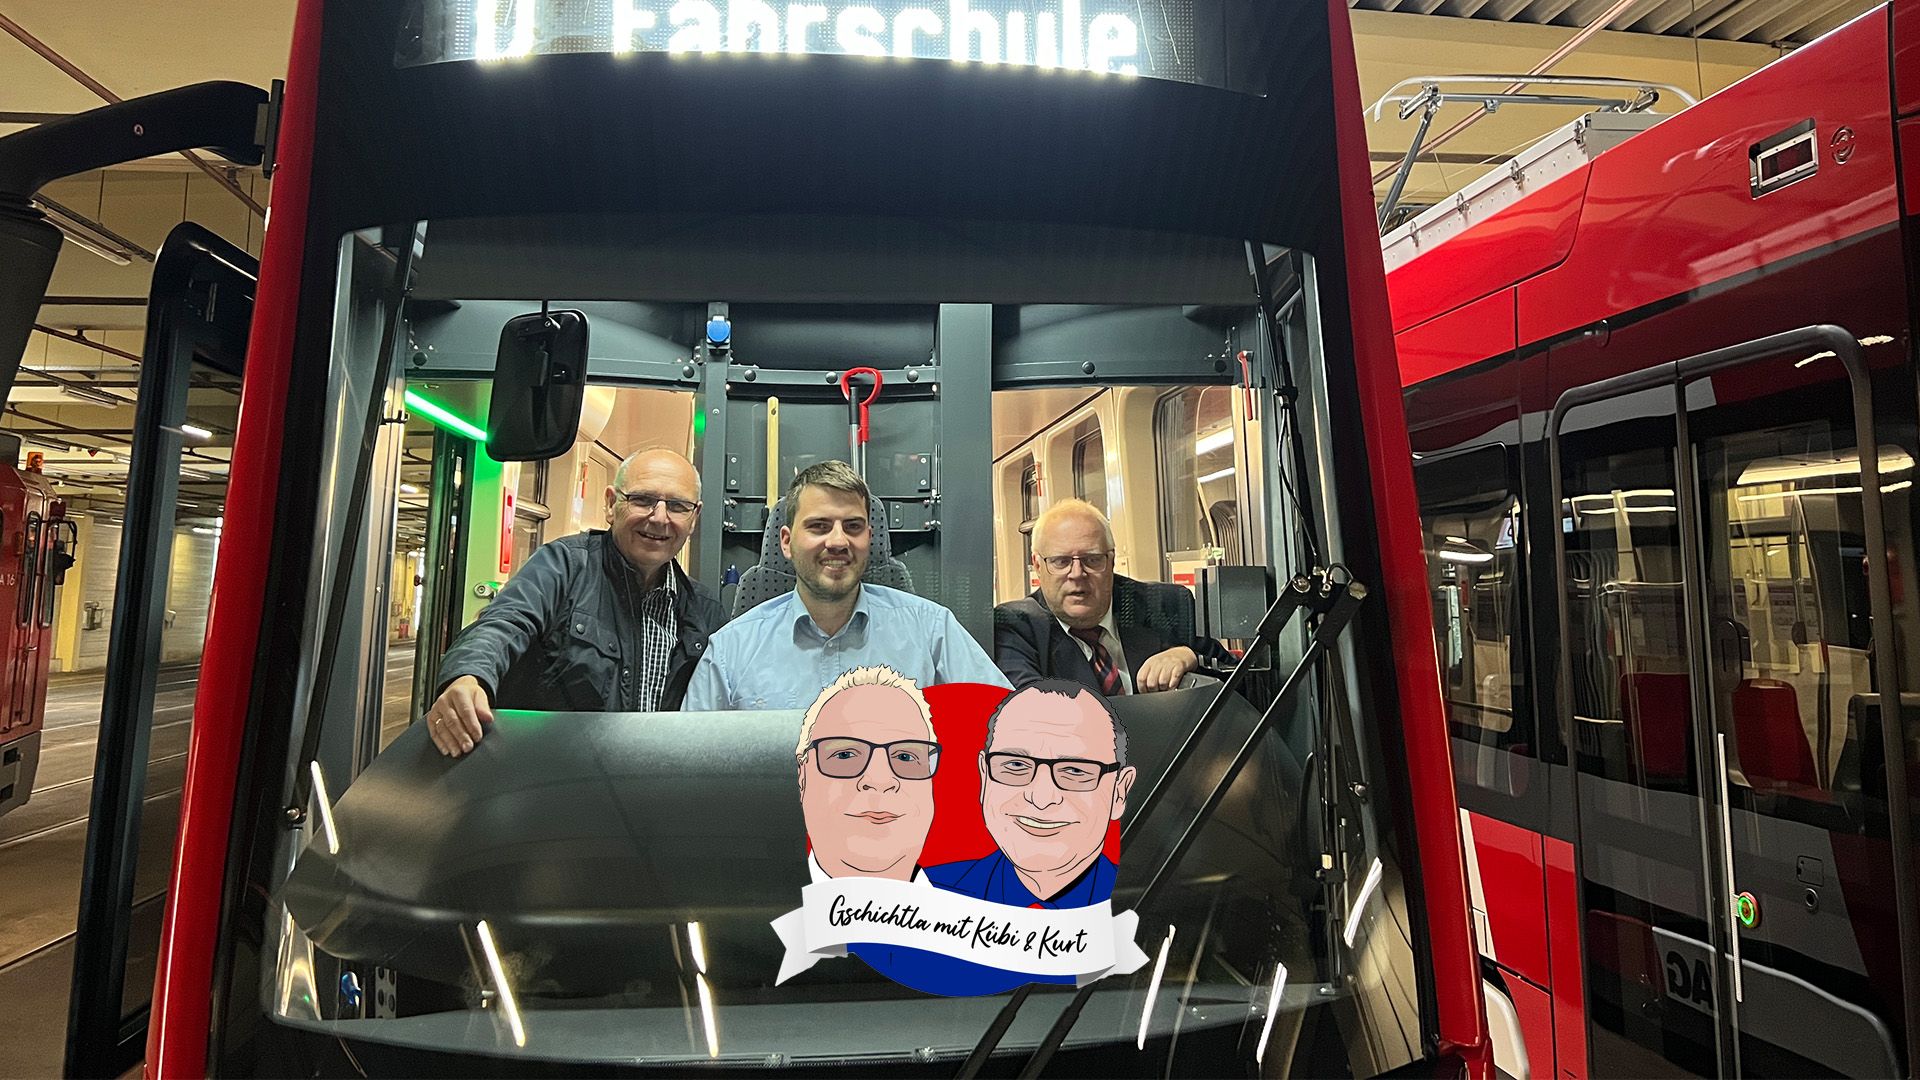 Gschichtla mit Kübi und Kurt, neue Straßenbahn Avenio.